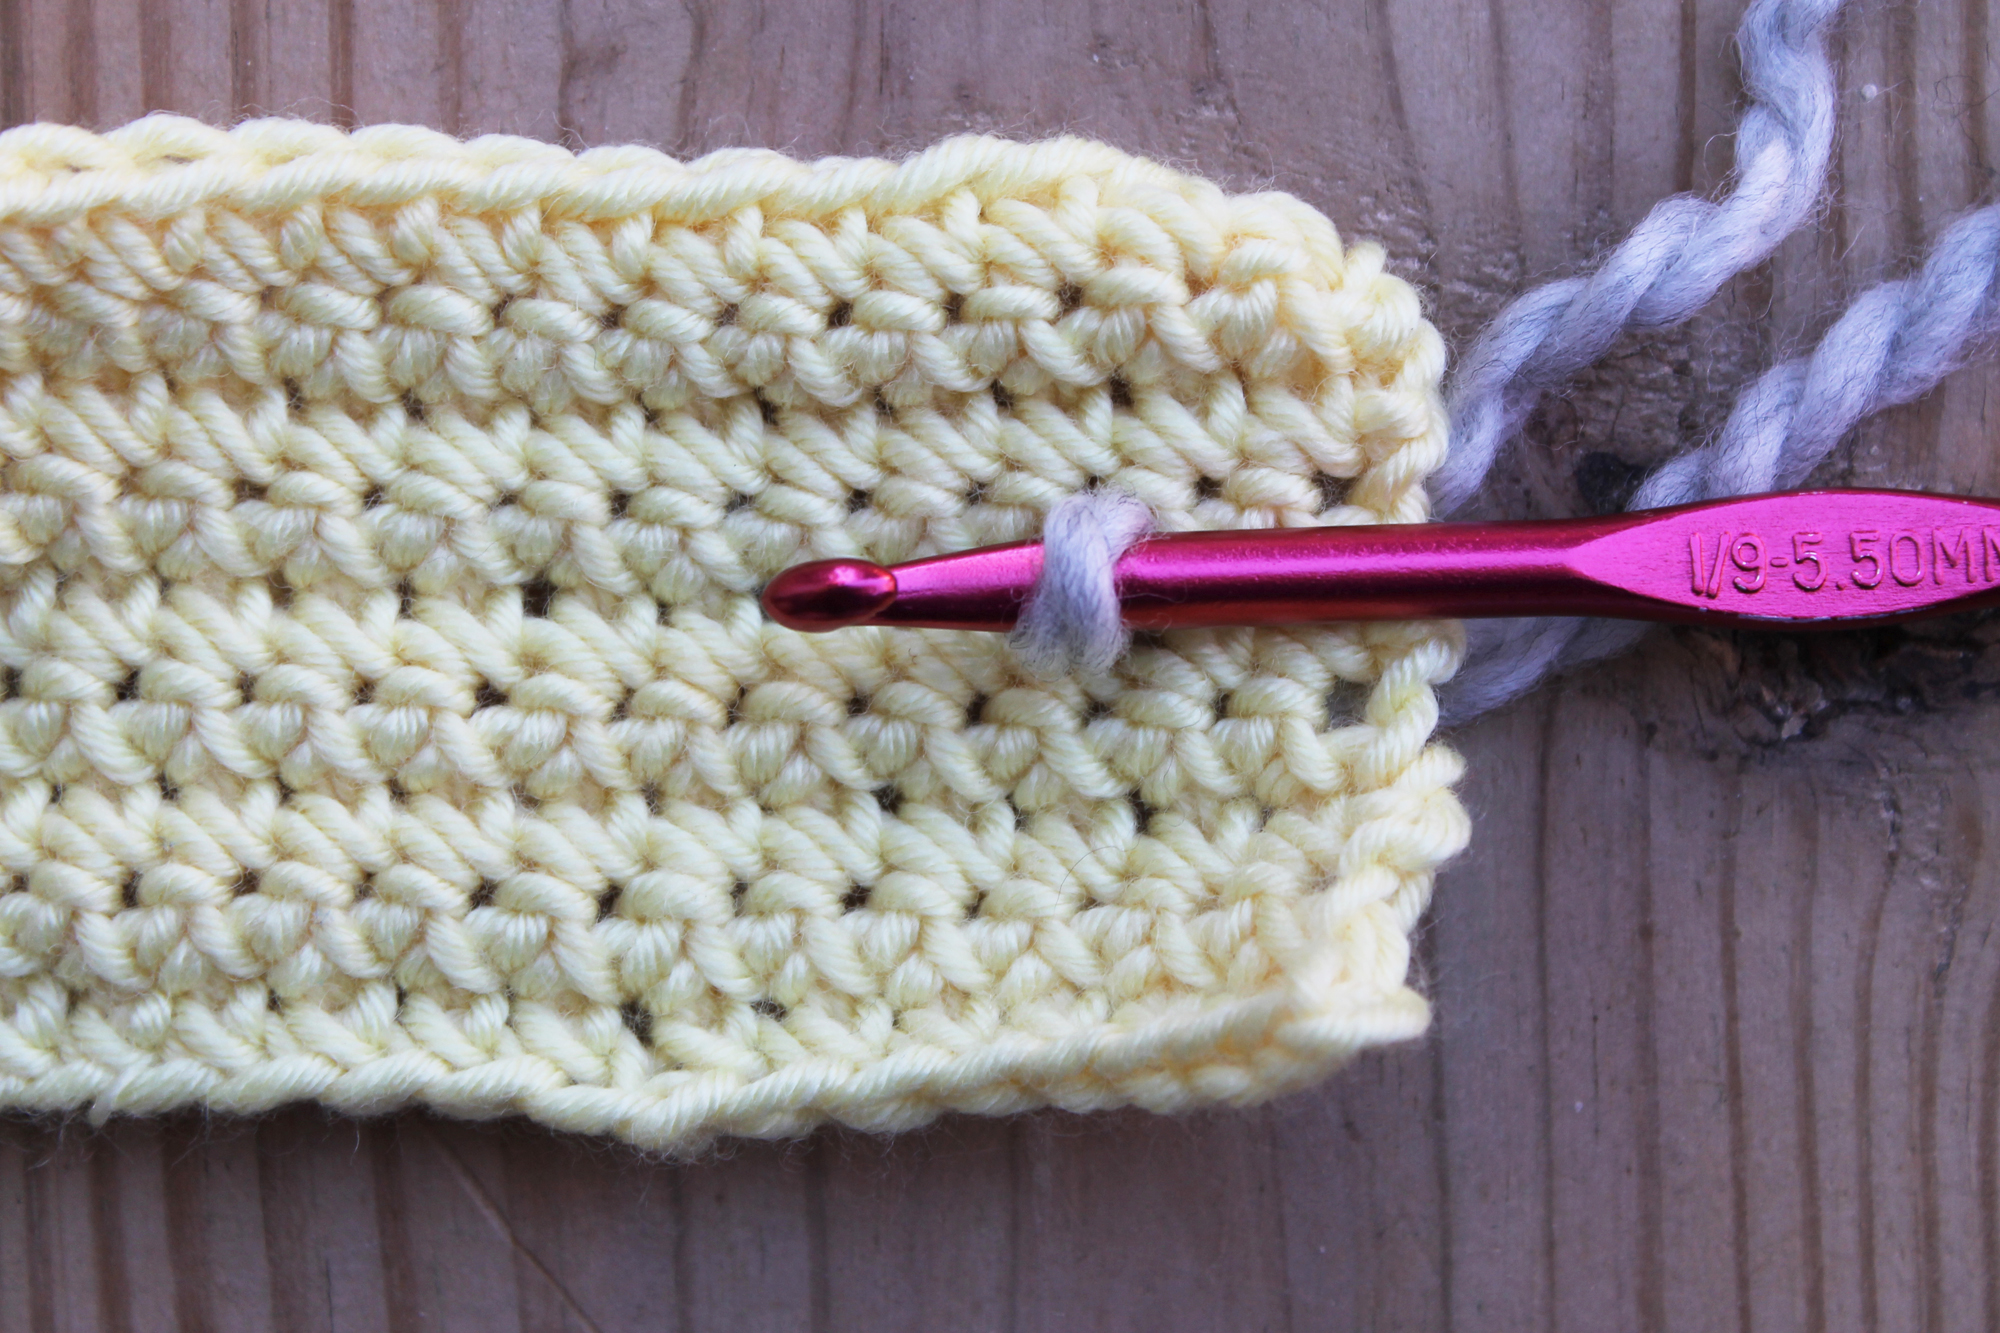 Surface crochet